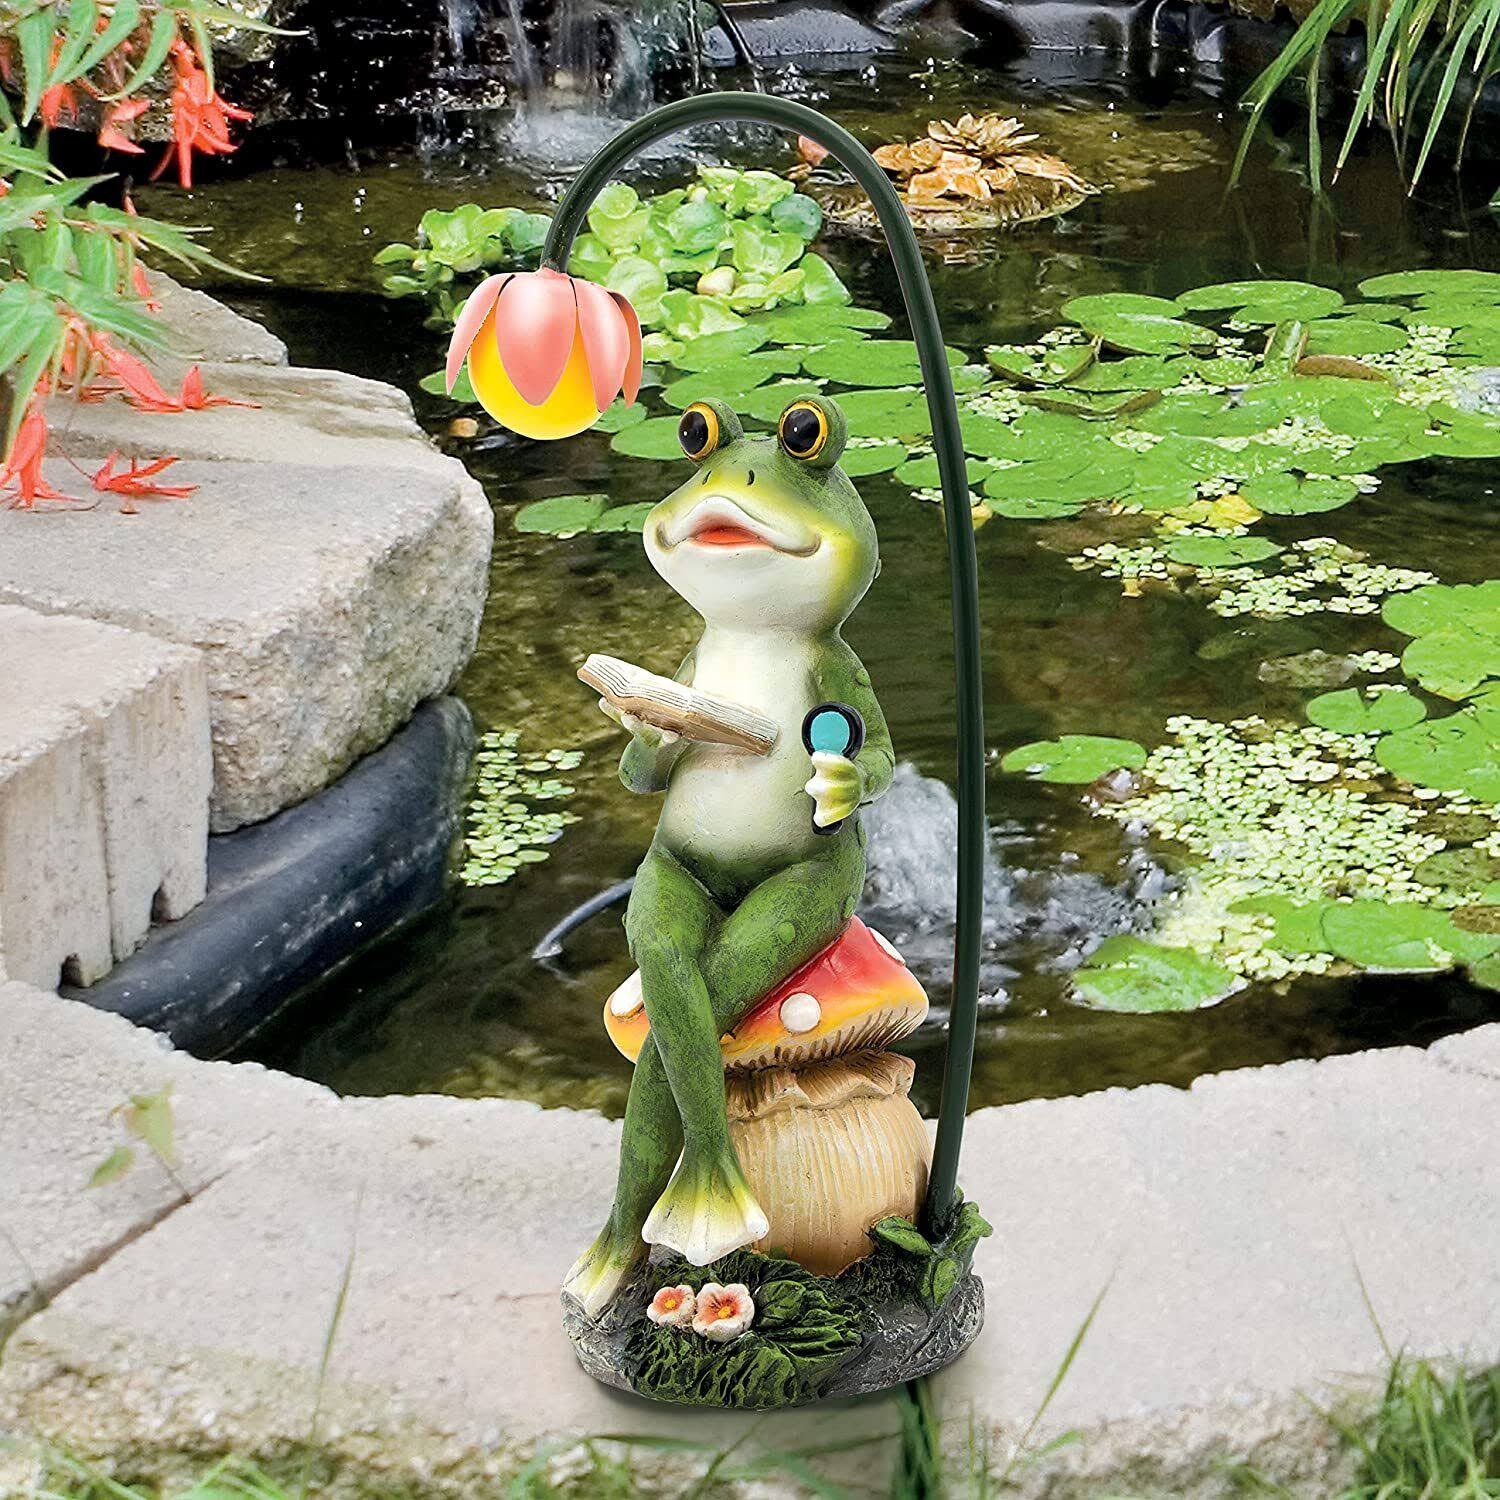 GardenKraft Solar Light-up Reading Frog / Charming Traditional Garden Ornament